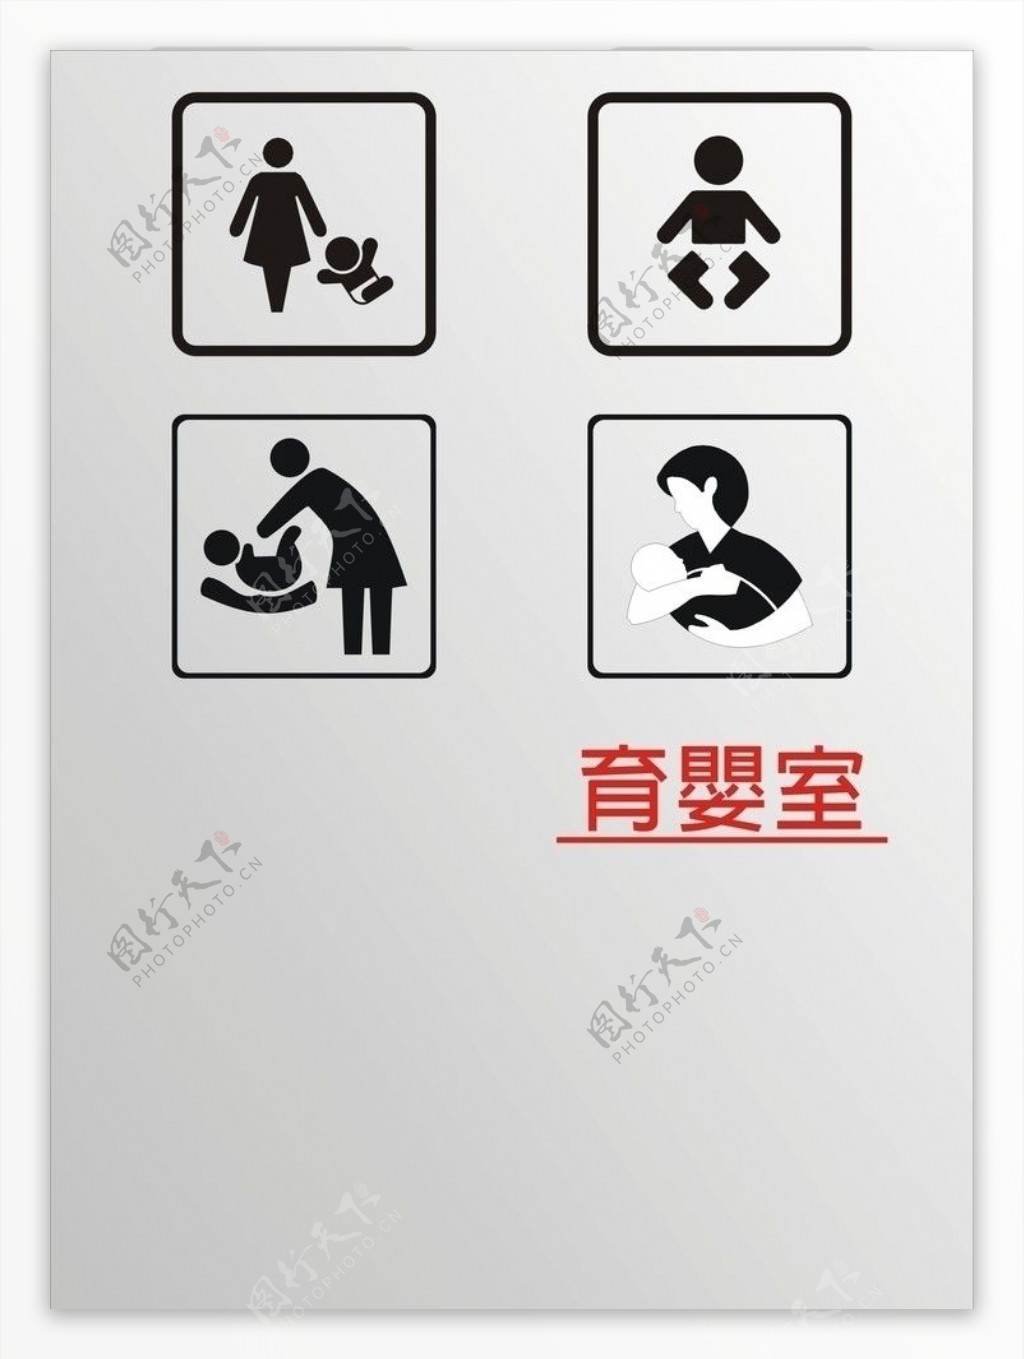 育婴室CDR标志图片